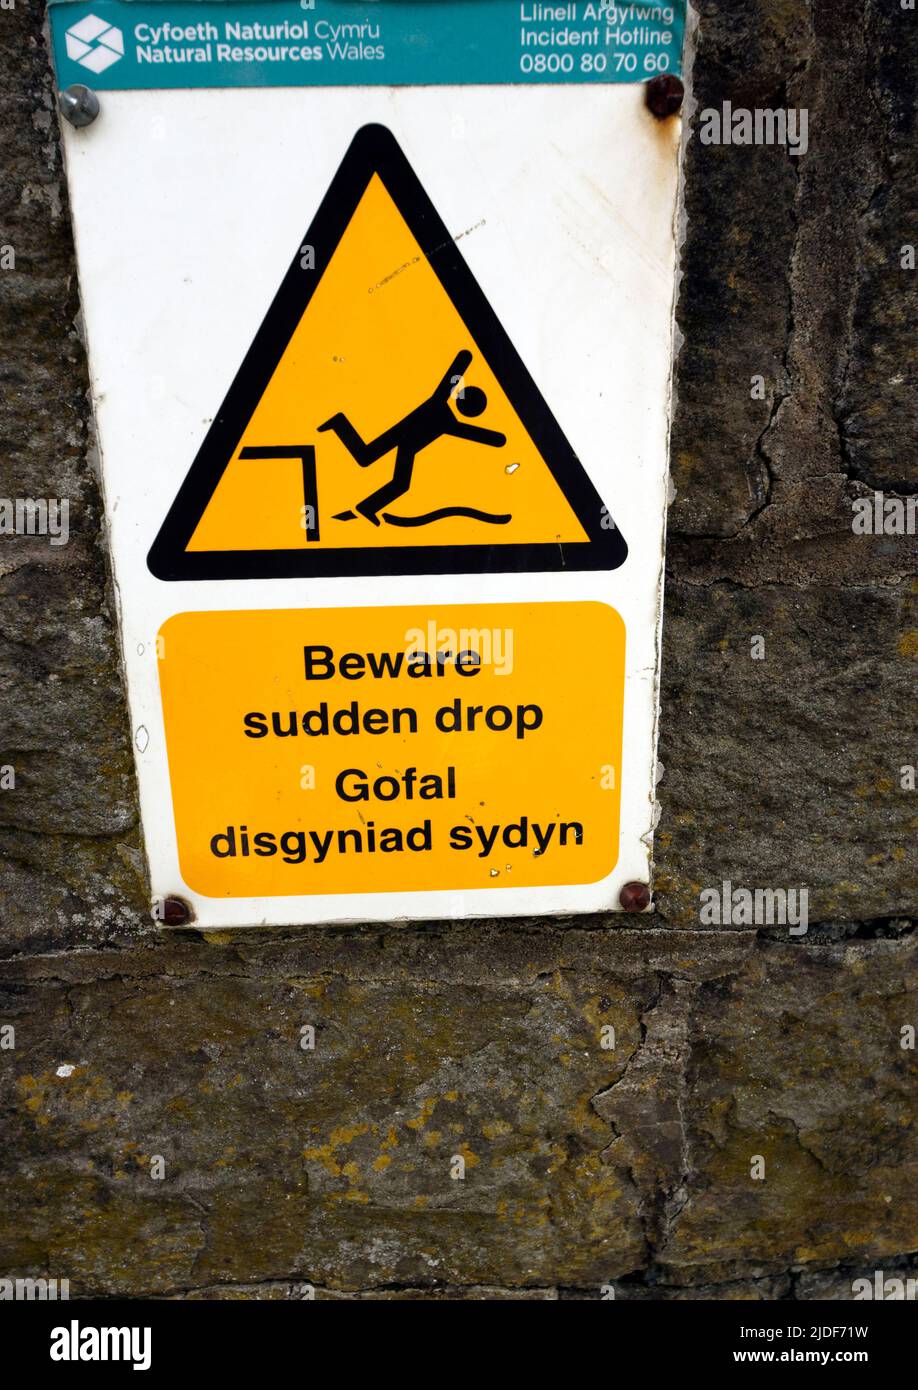 Achten Sie auf die Schilder auf Englisch und Walisisch, Cardiff Bay, Cardiff, Wales. Stockfoto